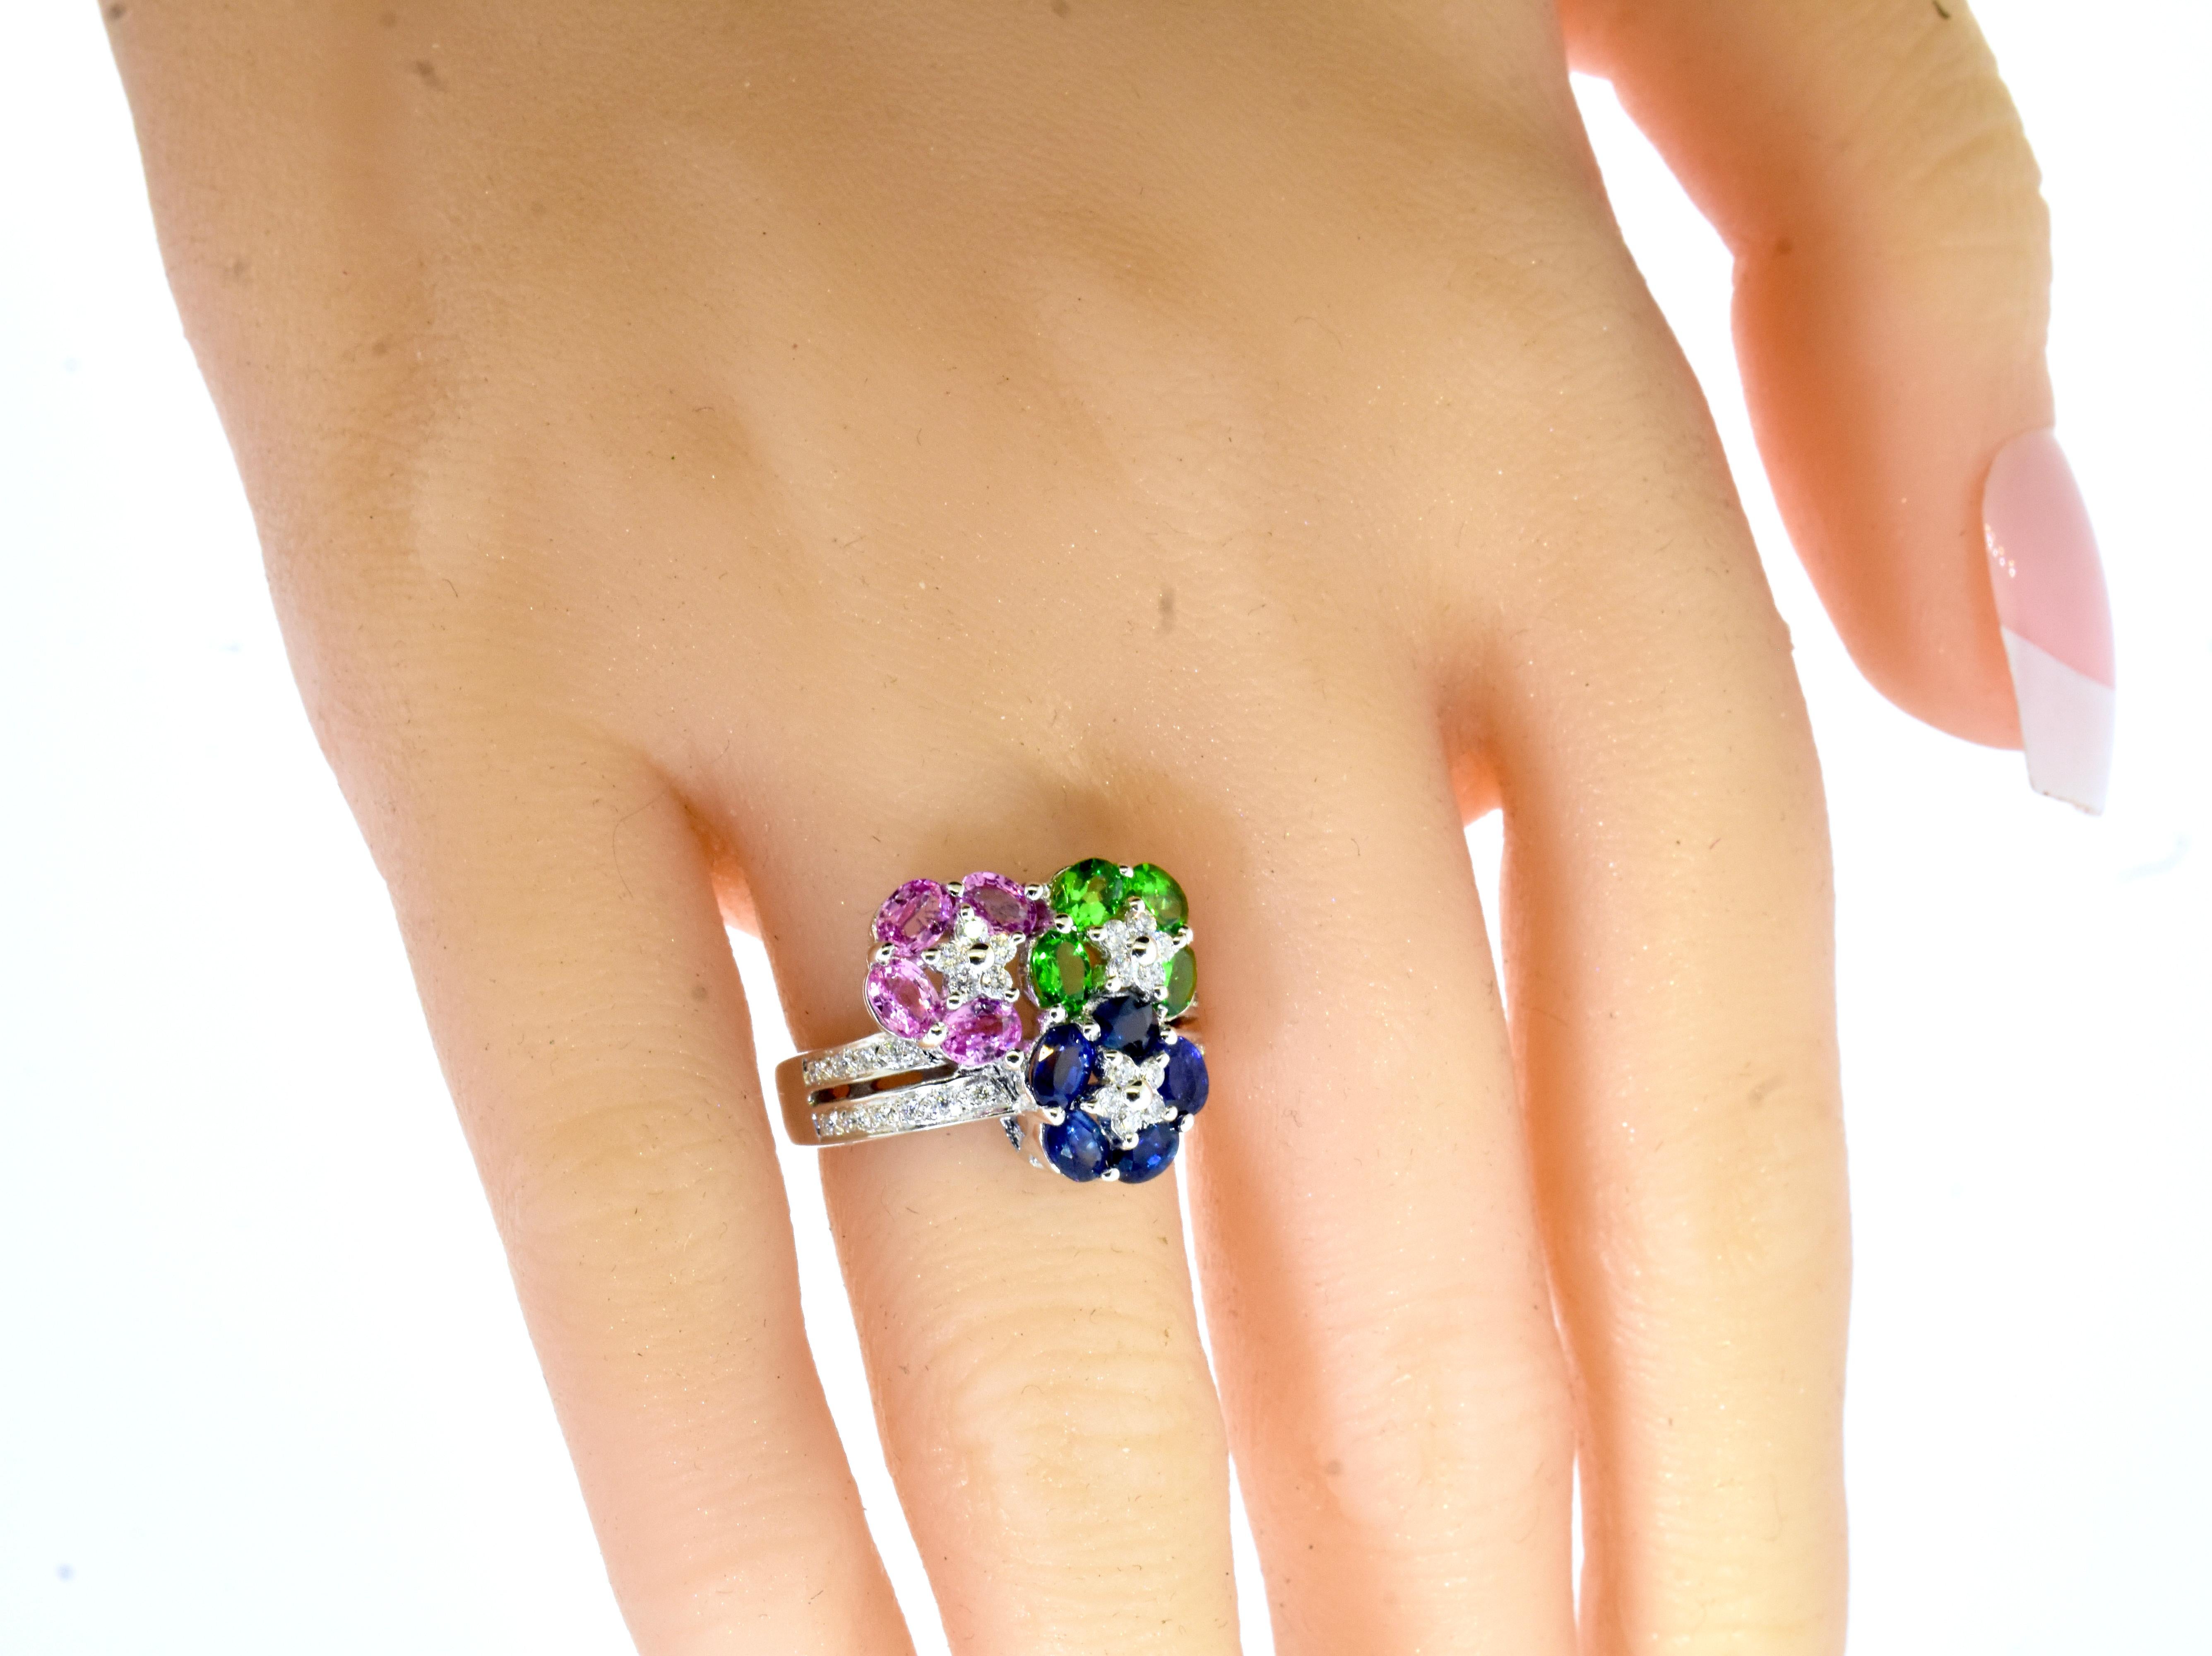 Saphire, blaue und rosafarbene sowie leuchtend grüne Tsavorite mit weißen Diamanten im Brillantschliff bilden einen sehr schönen zeitgenössischen Ring der berühmten Firma LeVian.  Die  feine helle und saubere oval geschliffene Saphire (sowohl rosa